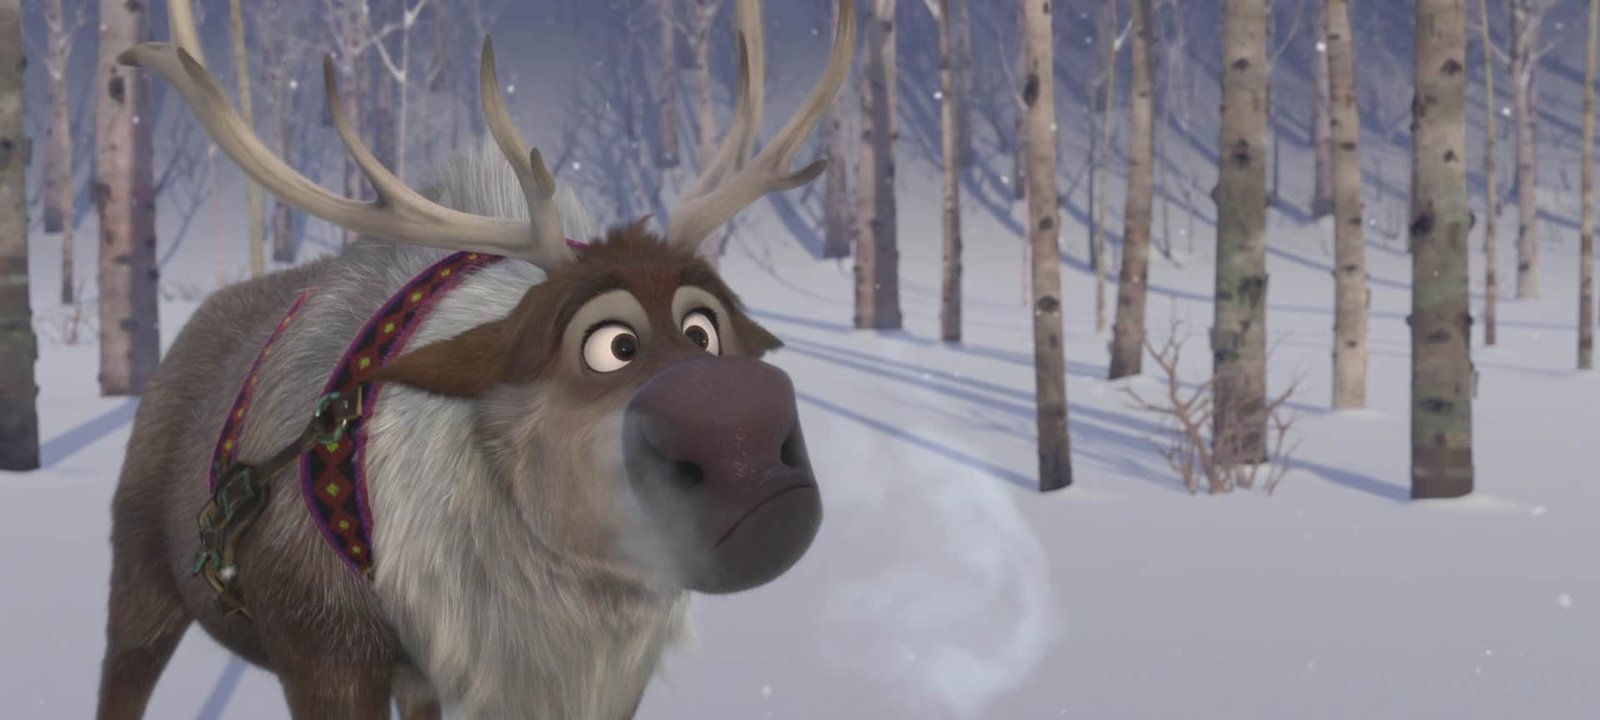 Un renne aux yeux écarquillés et au harnais coloré, ressemblant à des personnages de Disney, se tient dans une forêt enneigée, l'air visible sortant de ses narines par une journée froide.